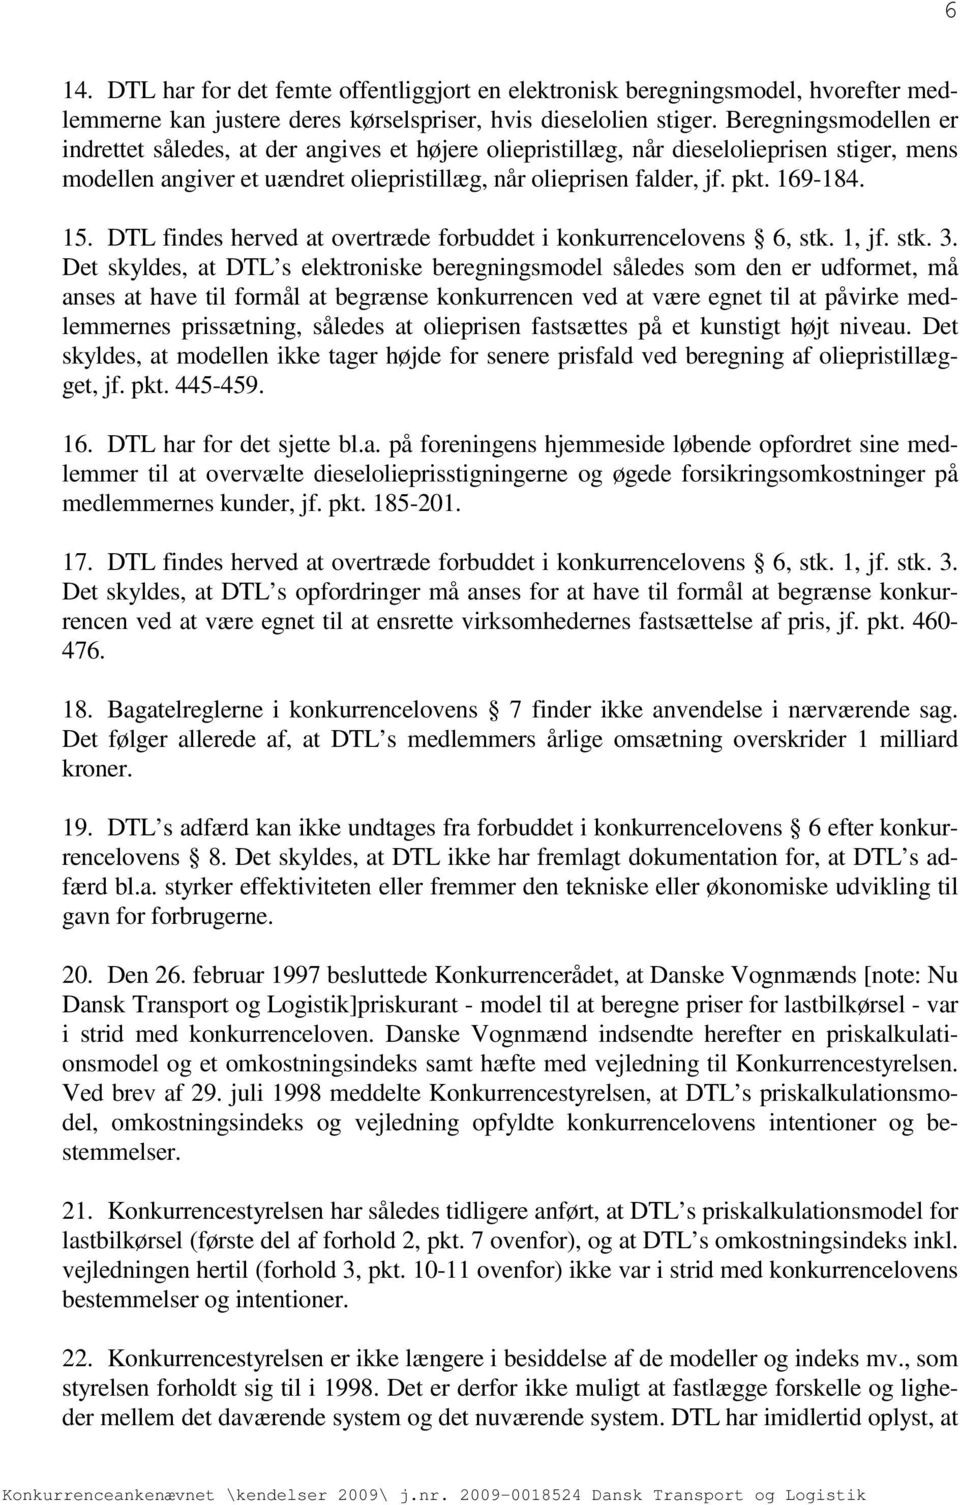 15. DTL findes herved at overtræde forbuddet i konkurrencelovens 6, stk. 1, jf. stk. 3.